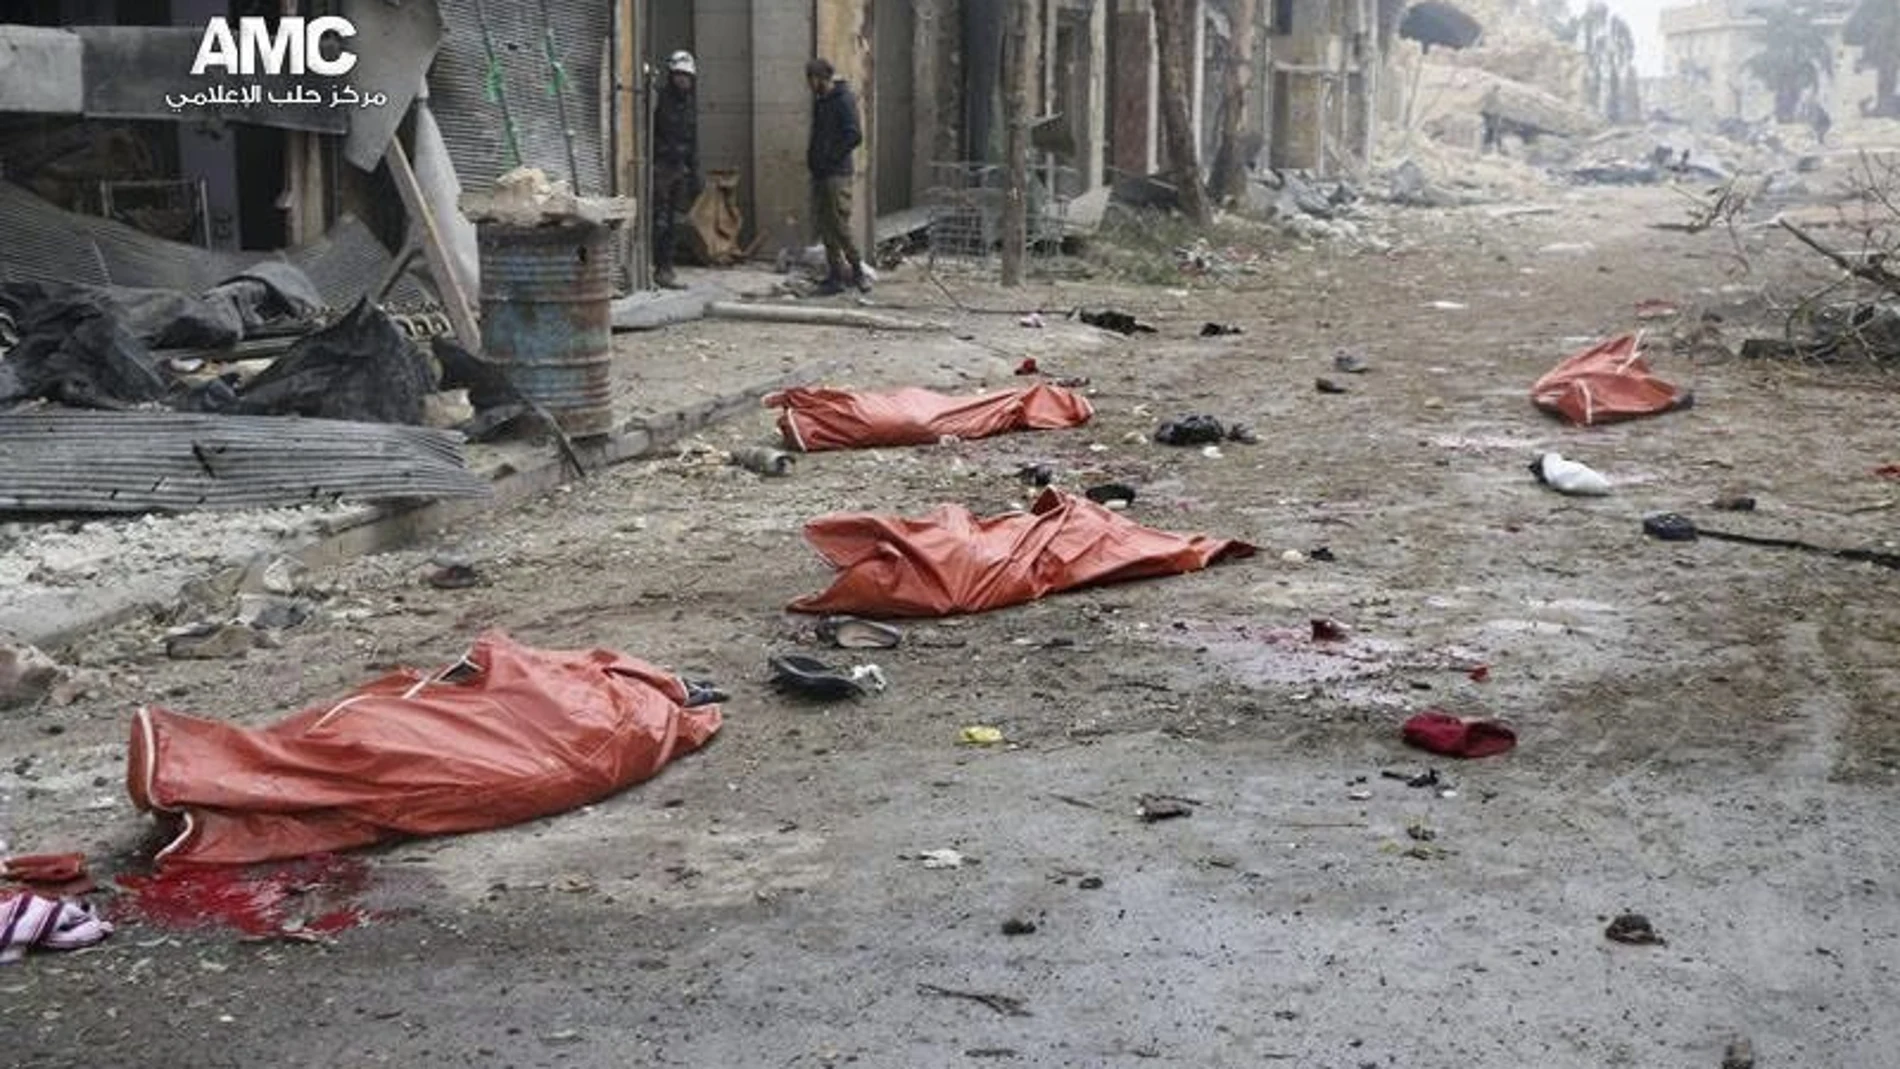 Cuerpos de varios fallecidos en el suelo, tras el impacto de una bomba en el barrio de Yeb al Quebeh en Alepo